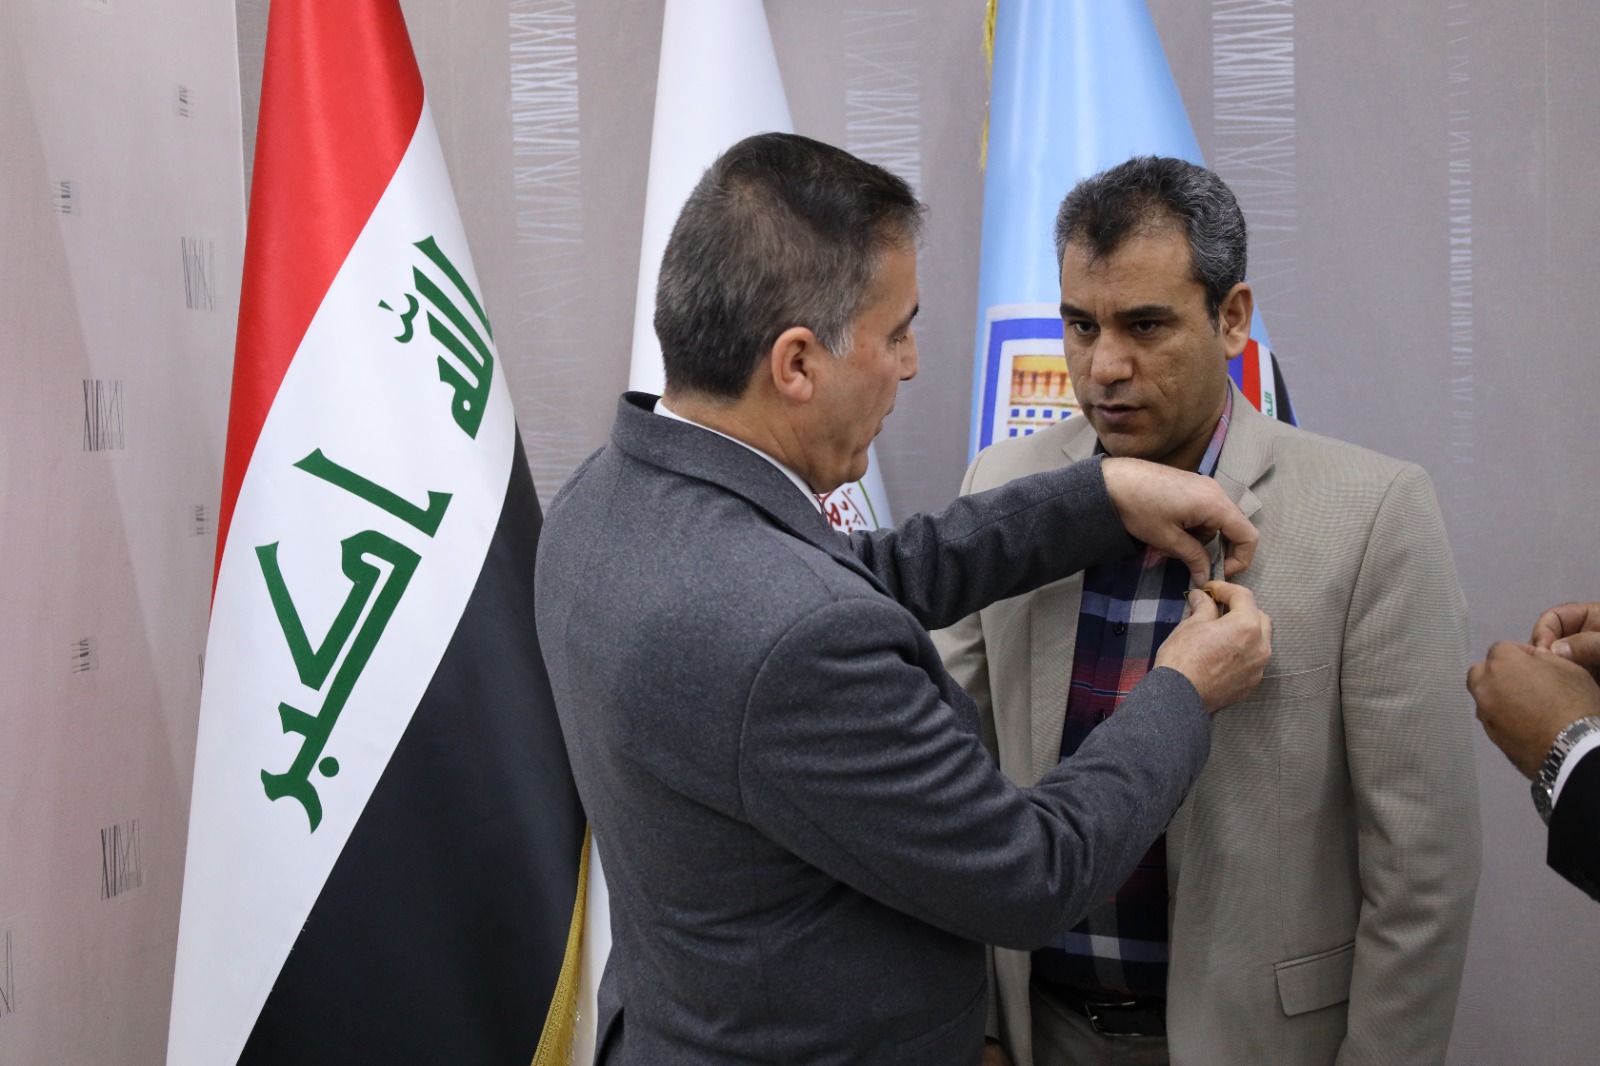 گزارش تصویری حضور نمایندگان موسسه در بازدید از دستاوردهای علمی کشور عراق (بخش اول)